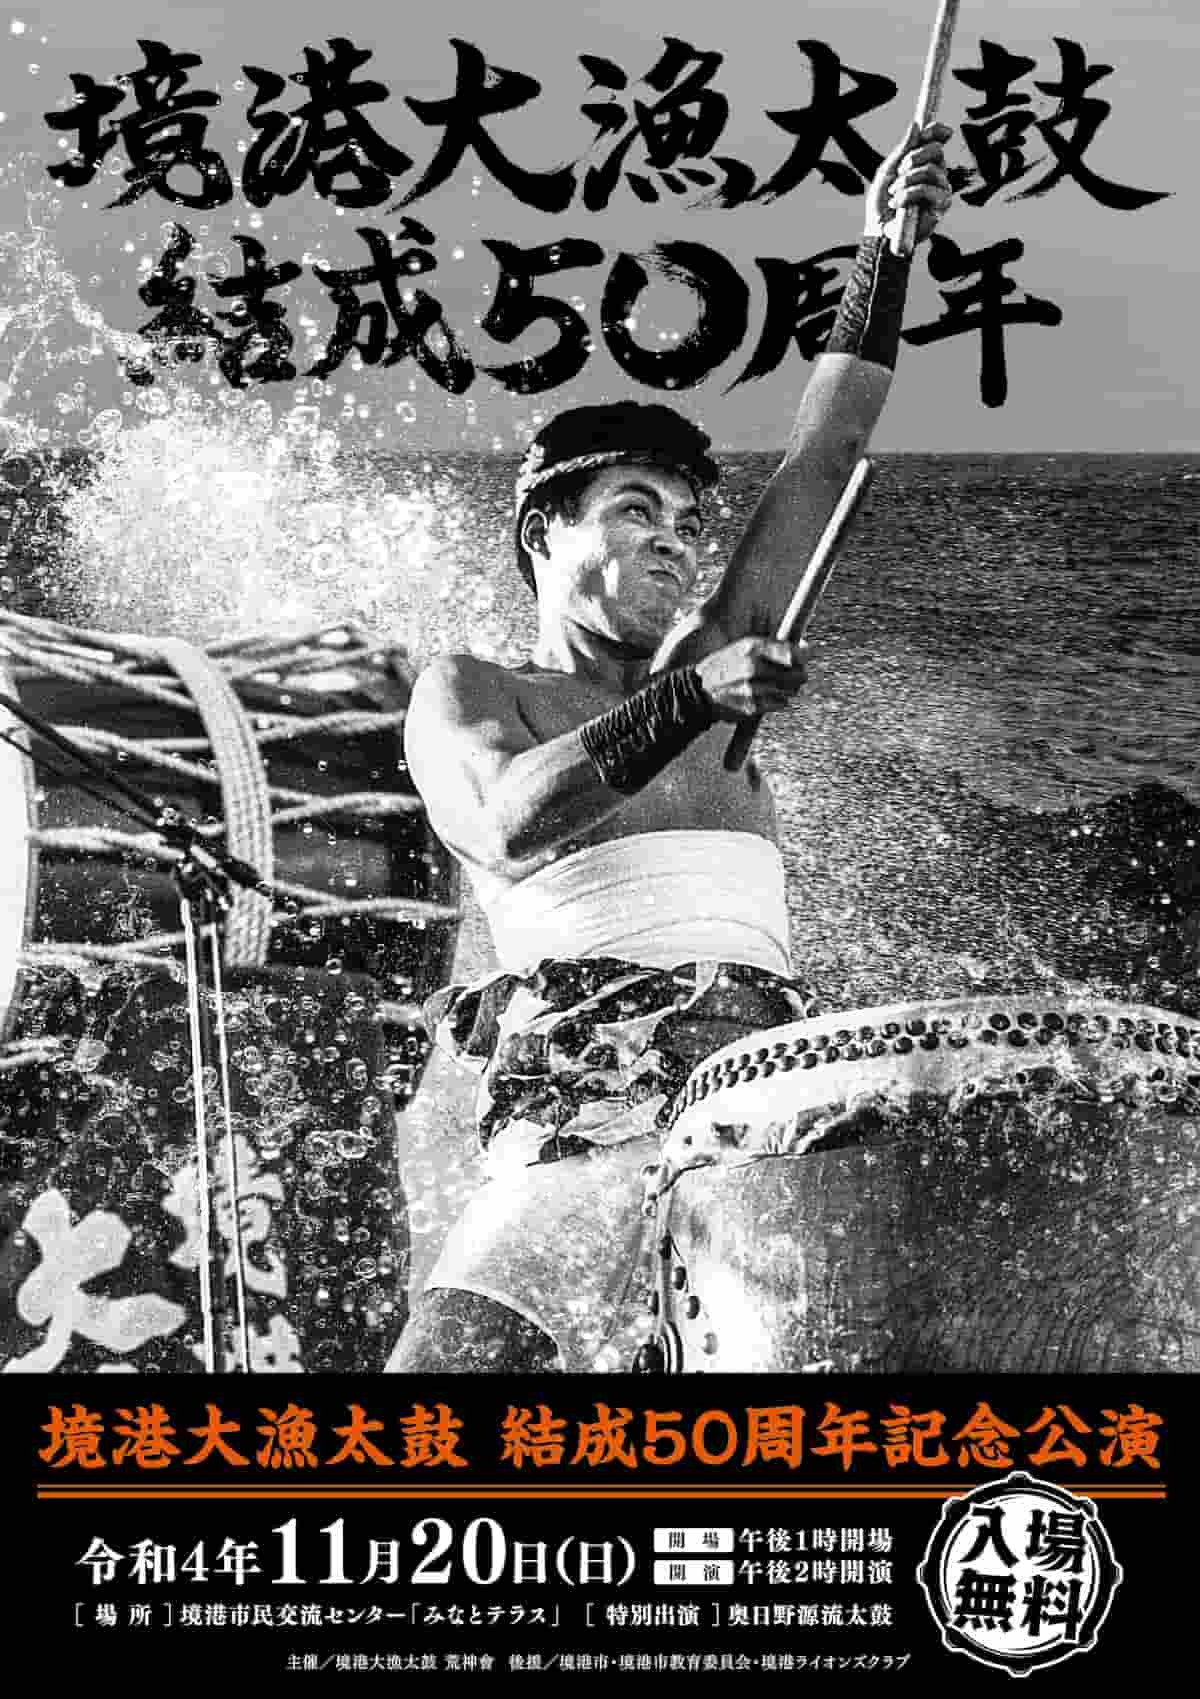 鳥取県境港市で開催される「境港大漁太鼓 結成50周年記念講演」のポスター